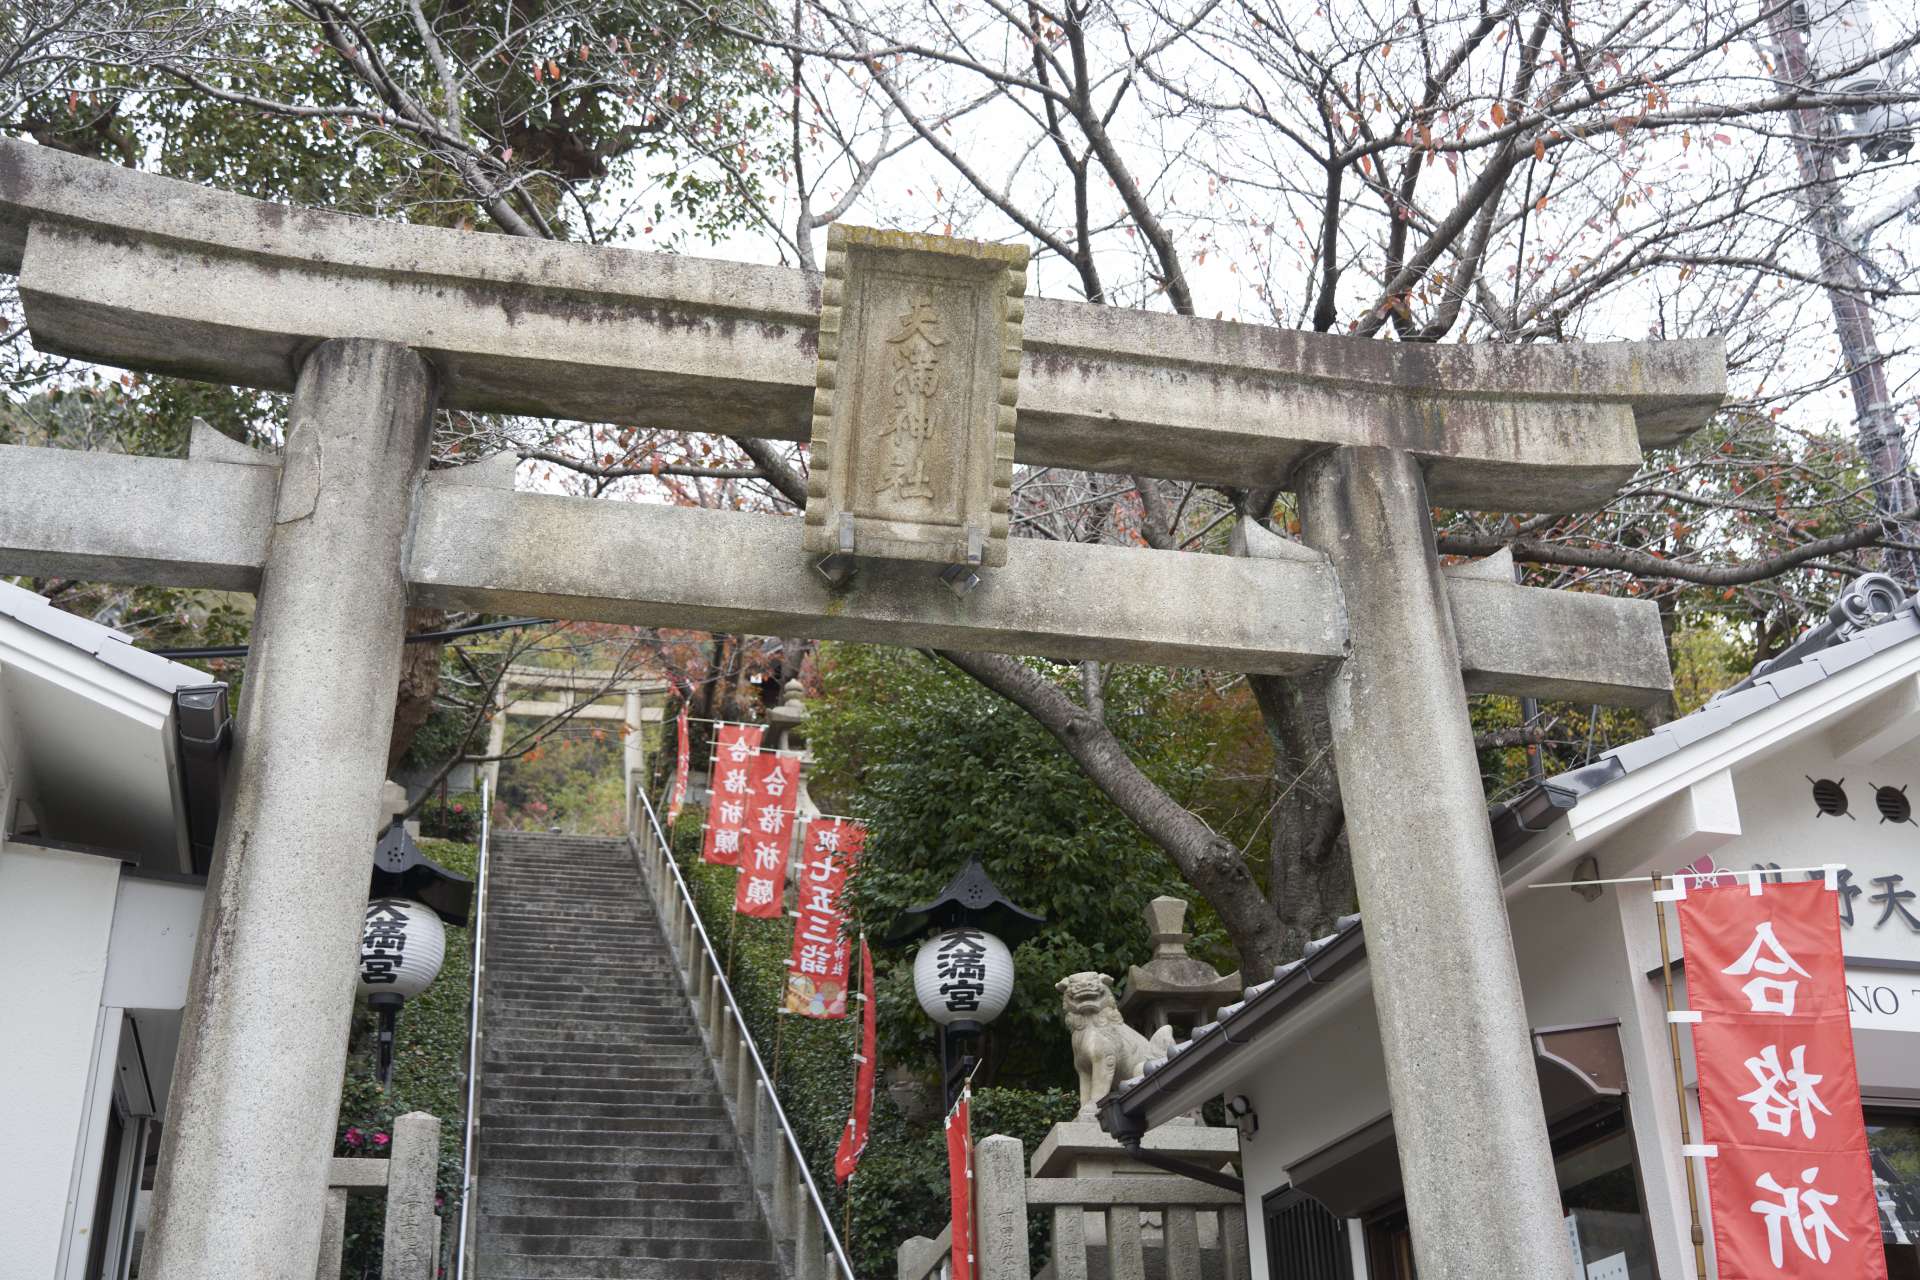 平清盛による創祀以来840余年。高台から神戸の町を見守り続ける